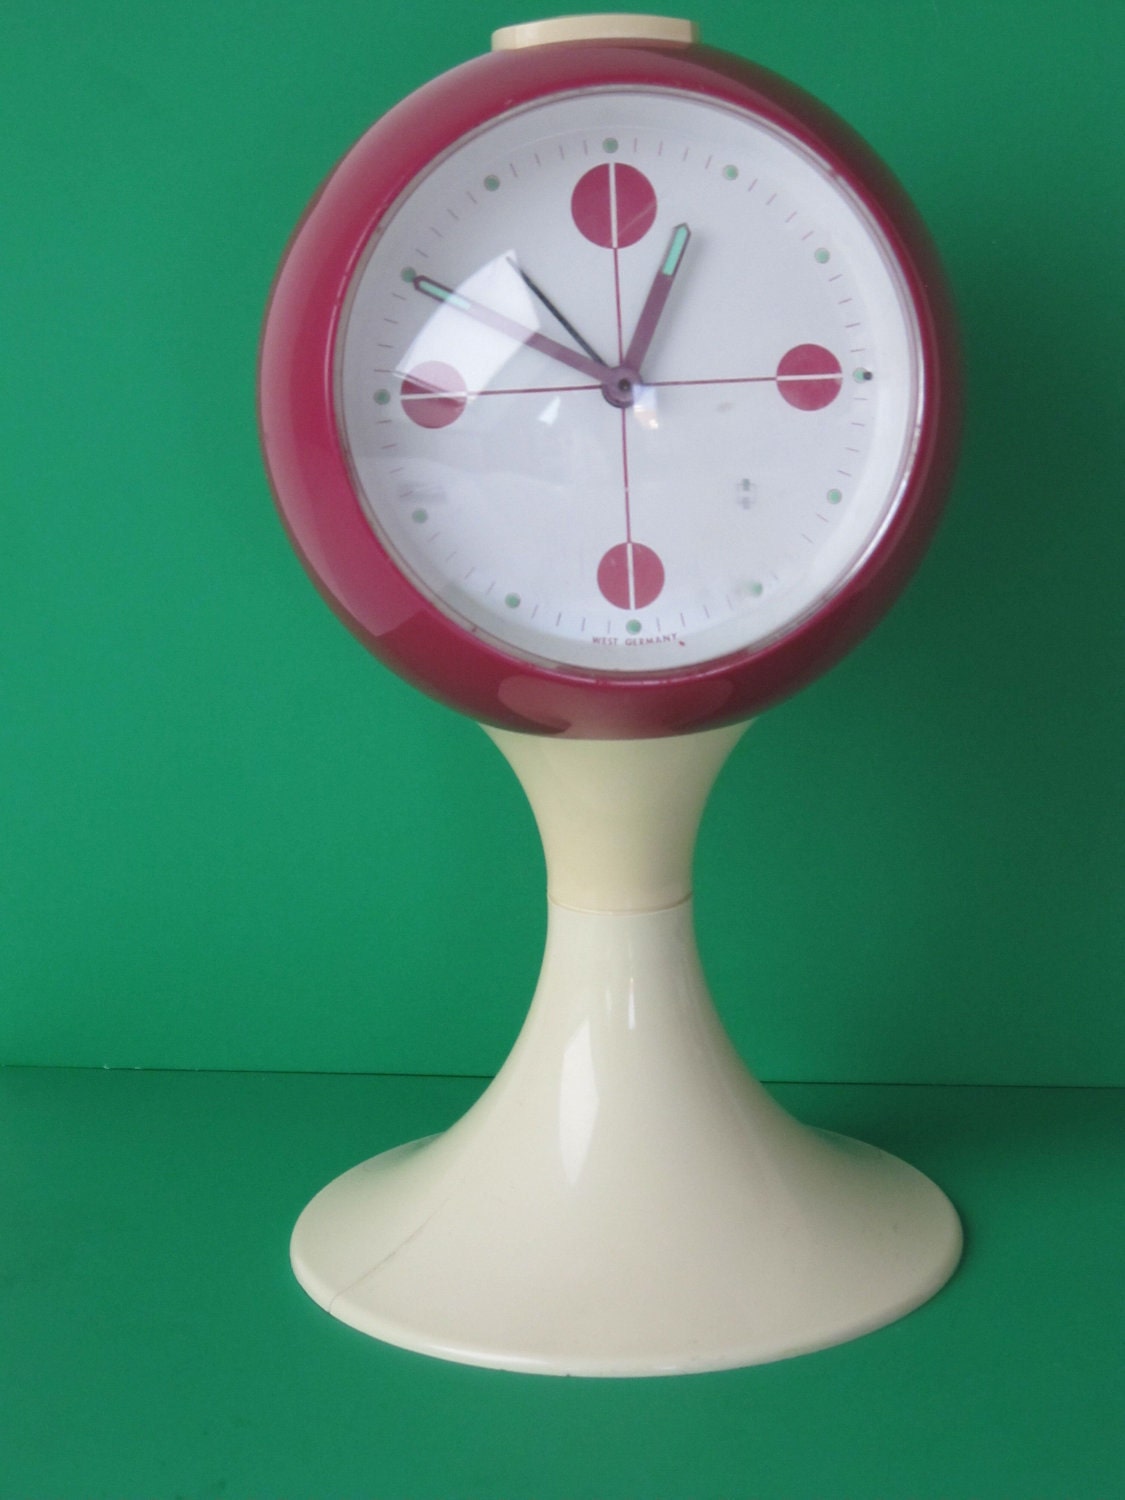 Reloj despertador retro de pedestal de los años setenta.